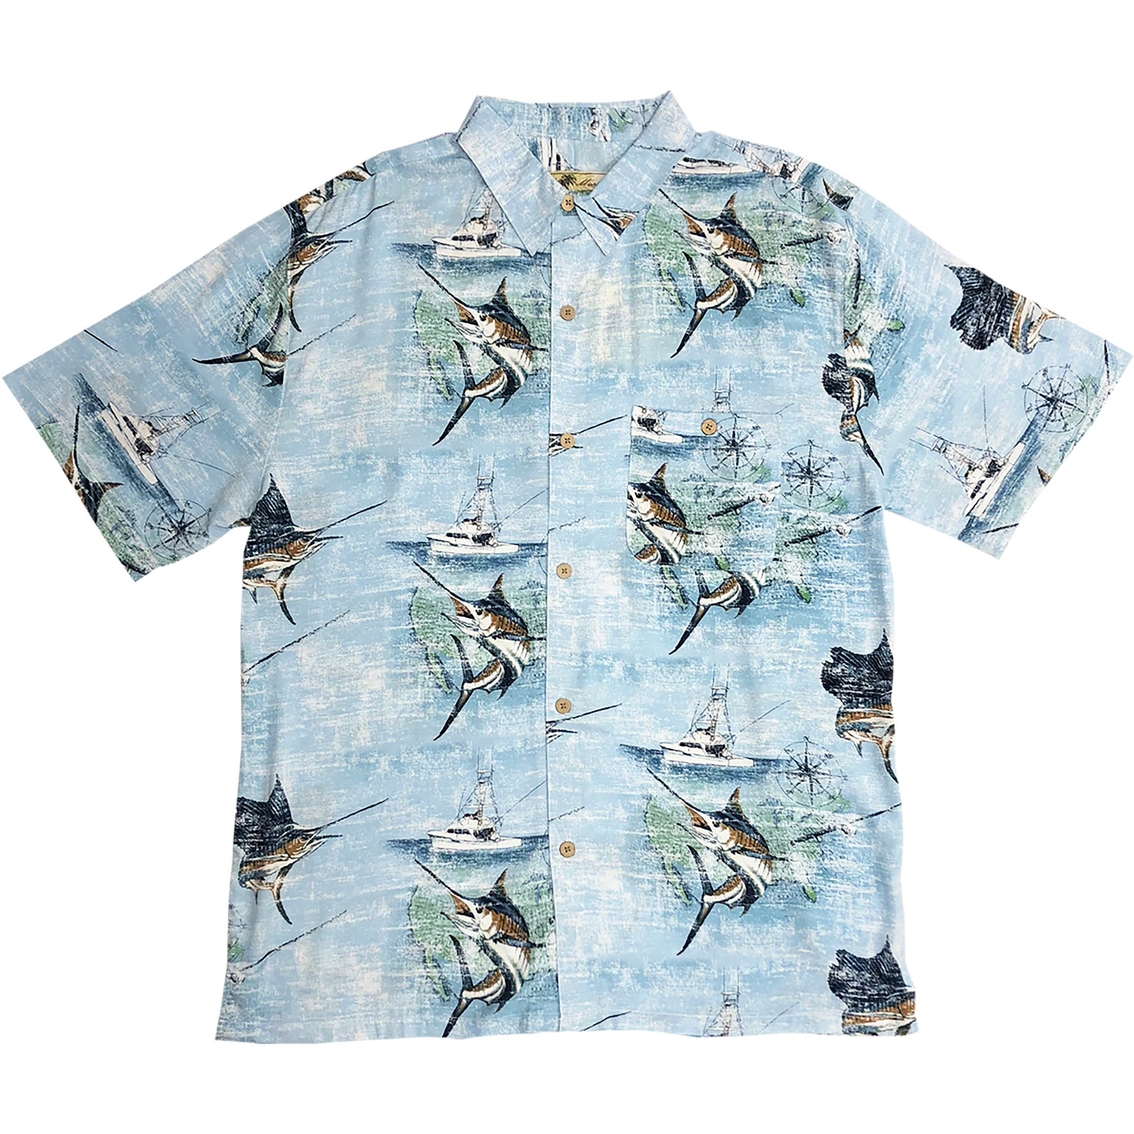 Joe Marlin Nautical Marlin Shirt, Shirts, Clothing & Accessories